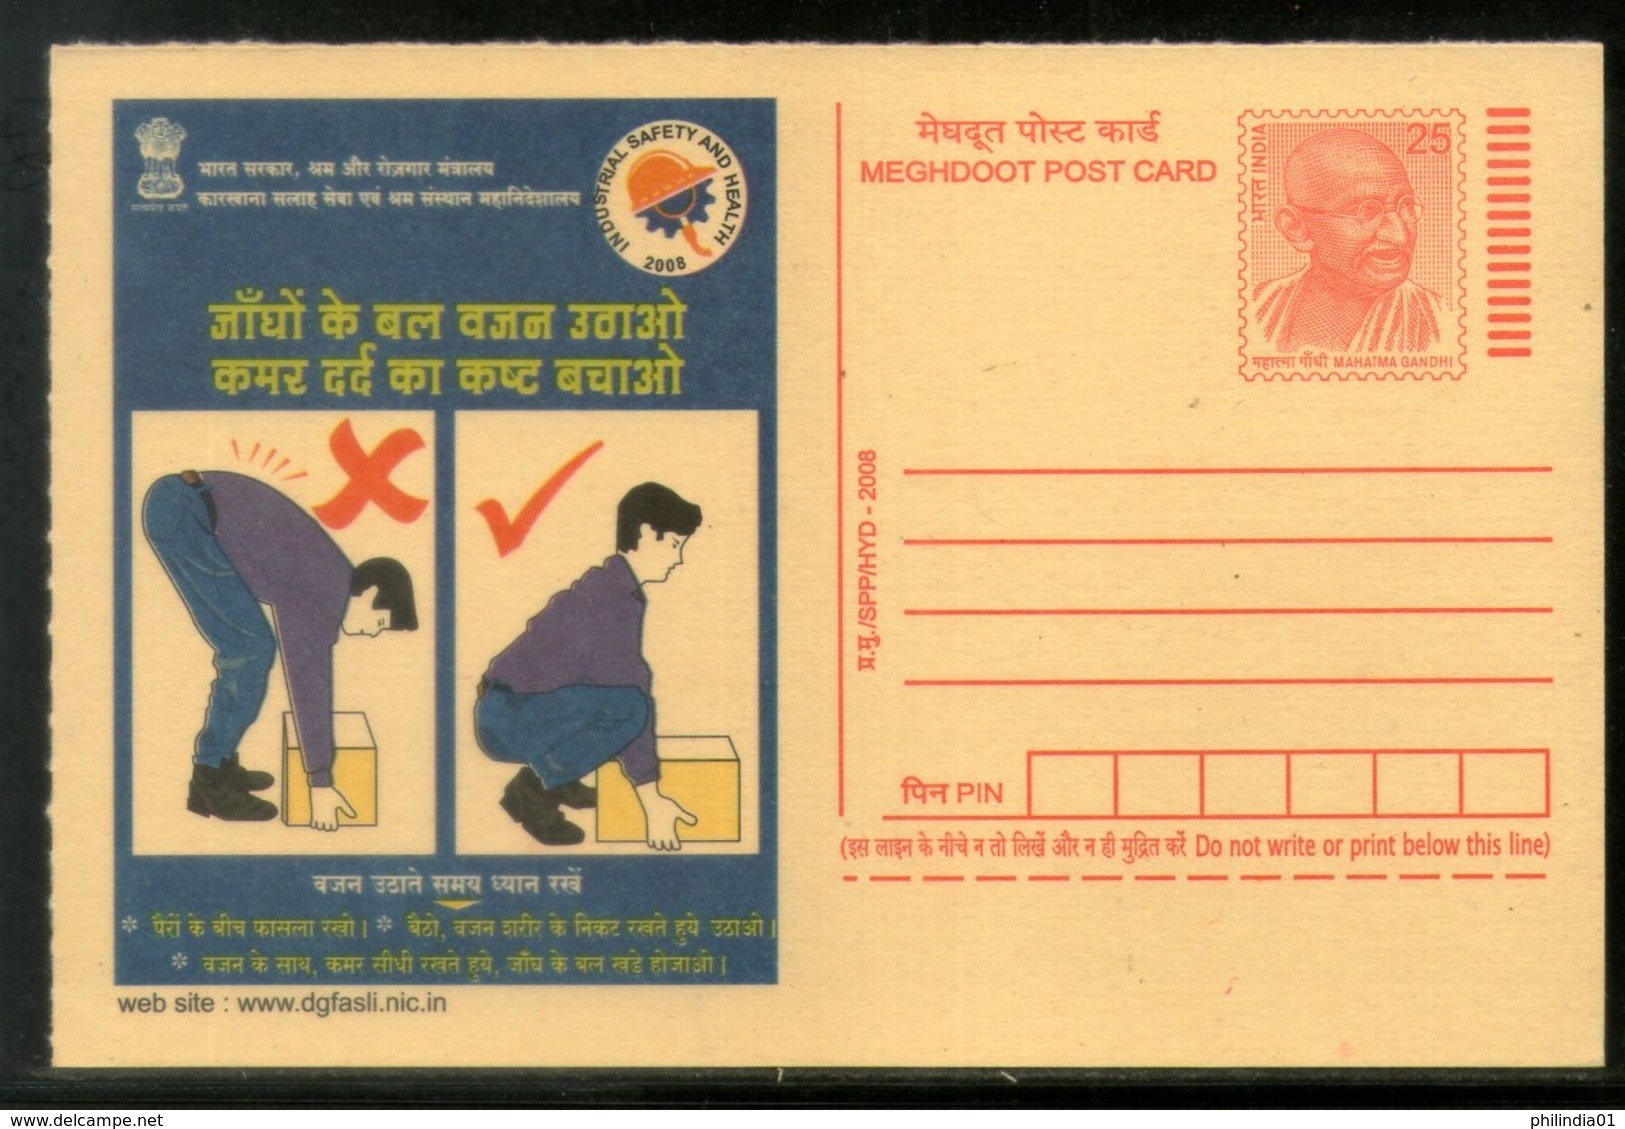 India 2008 Prevent Backaches Industrial Safety & Health Hindi Advert.Gandhi Post Card # 501 - Ongevallen & Veiligheid Op De Weg